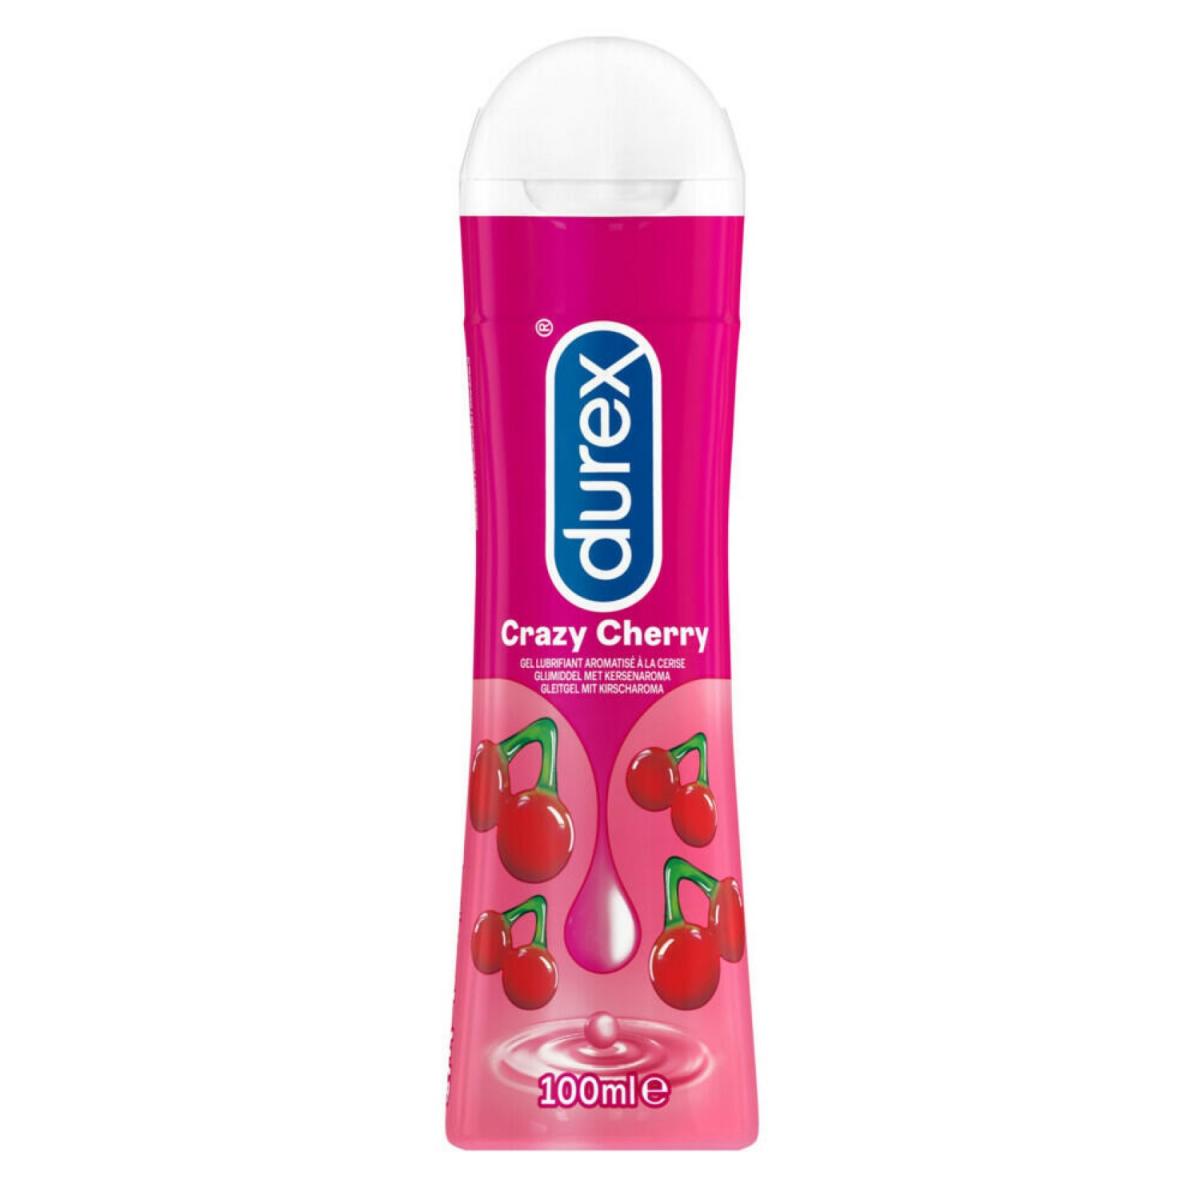 Roze flesje met Durex Play Crazy Cherry, Durex Play voor seksuele avonturen! Durex producten koop je bij Flavourez!